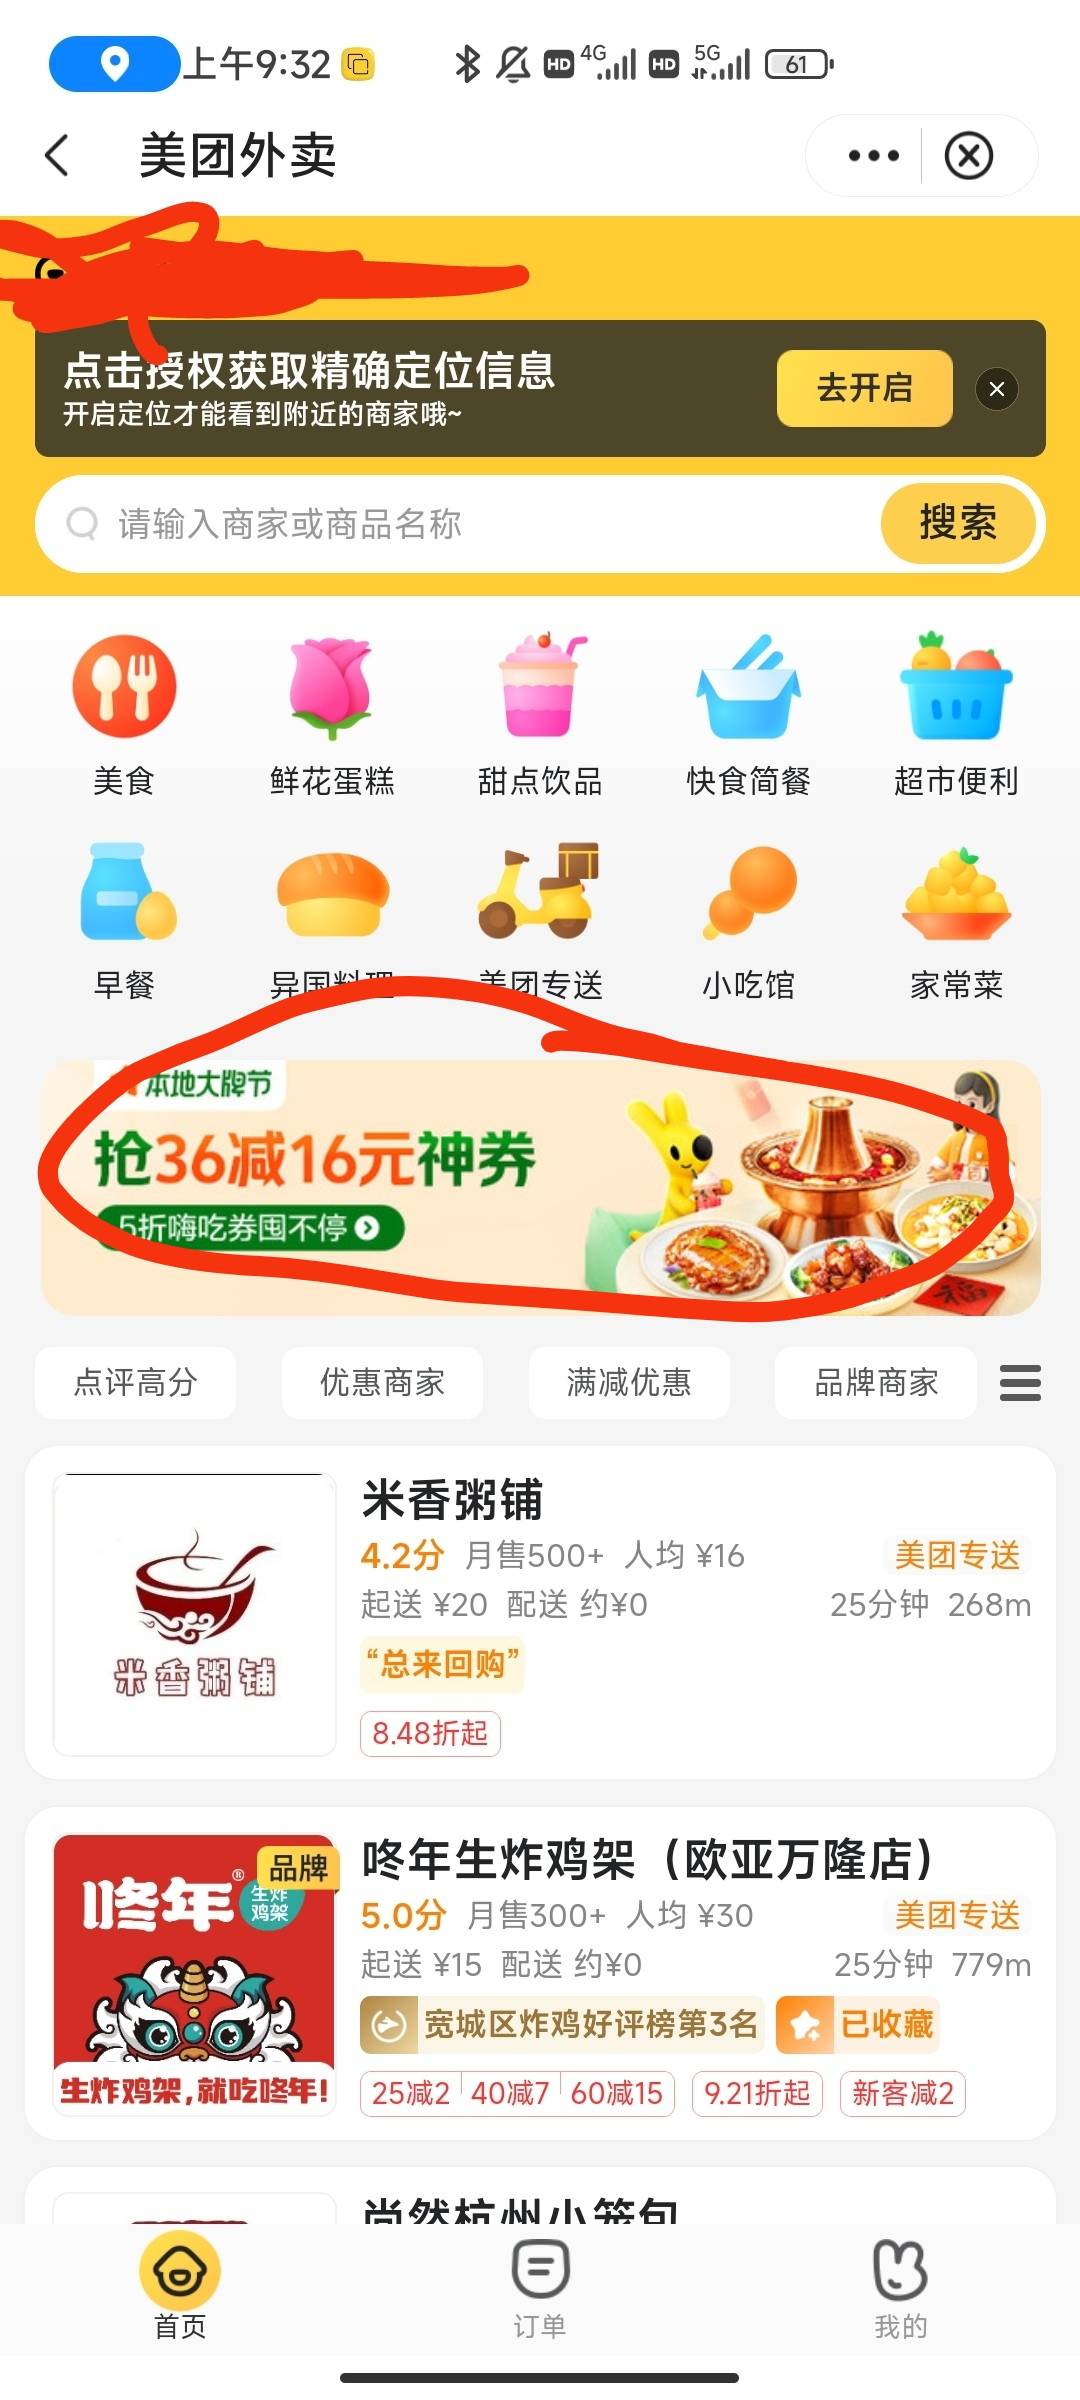 中国银行app，生活，选美团，今天有36_16的券。没吃饭的去啊，建行生活已经是过去式了64 / 作者:半夏如果 / 